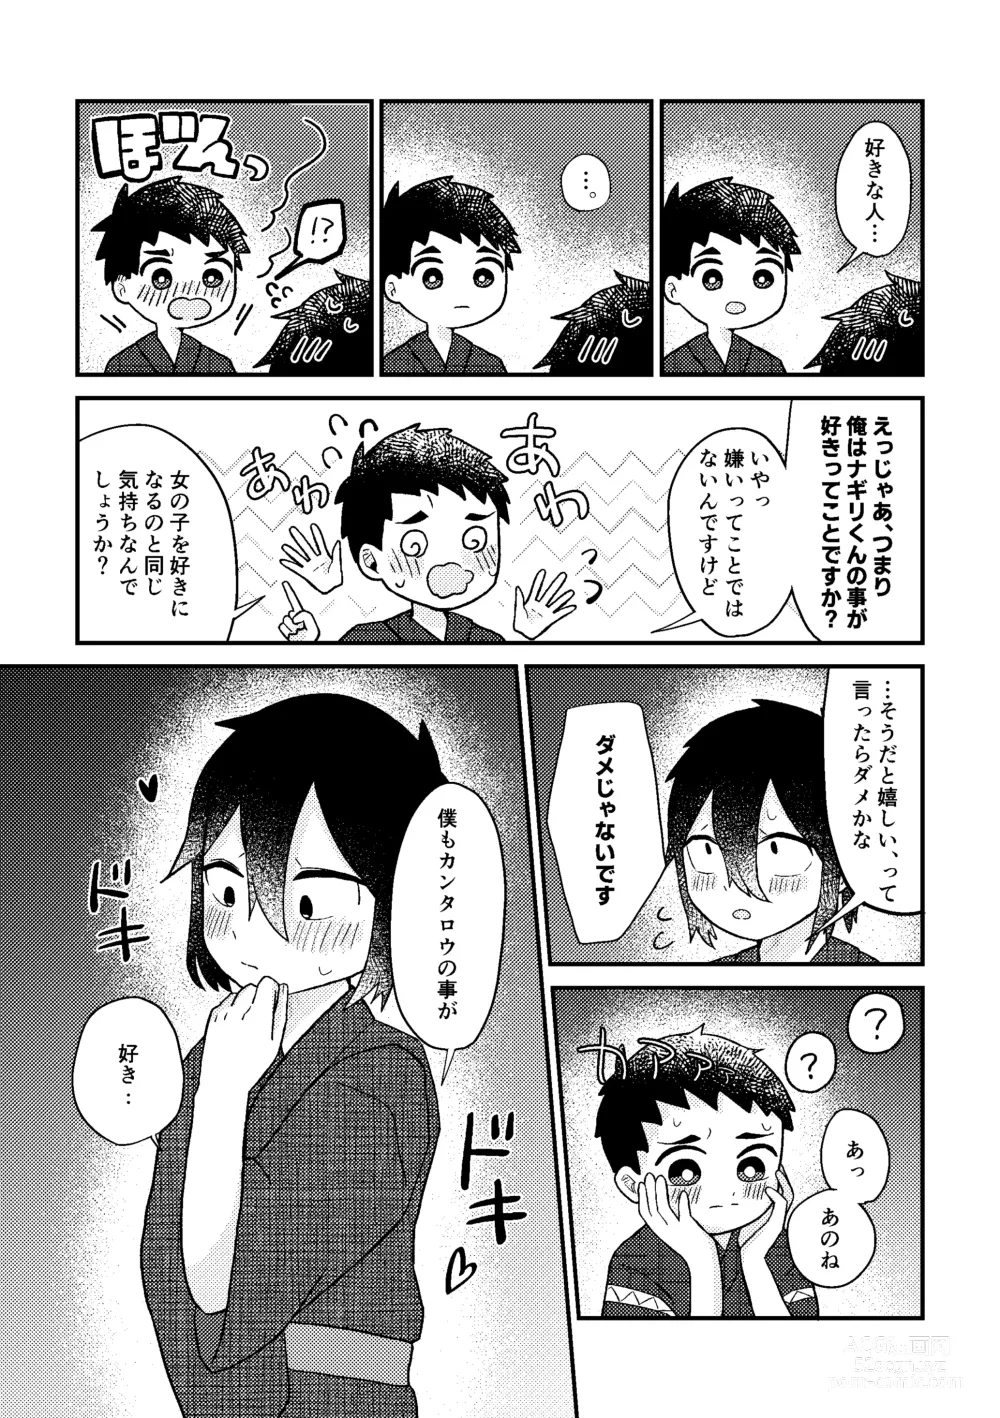 Page 32 of doujinshi Saigo no Natsuyasumi